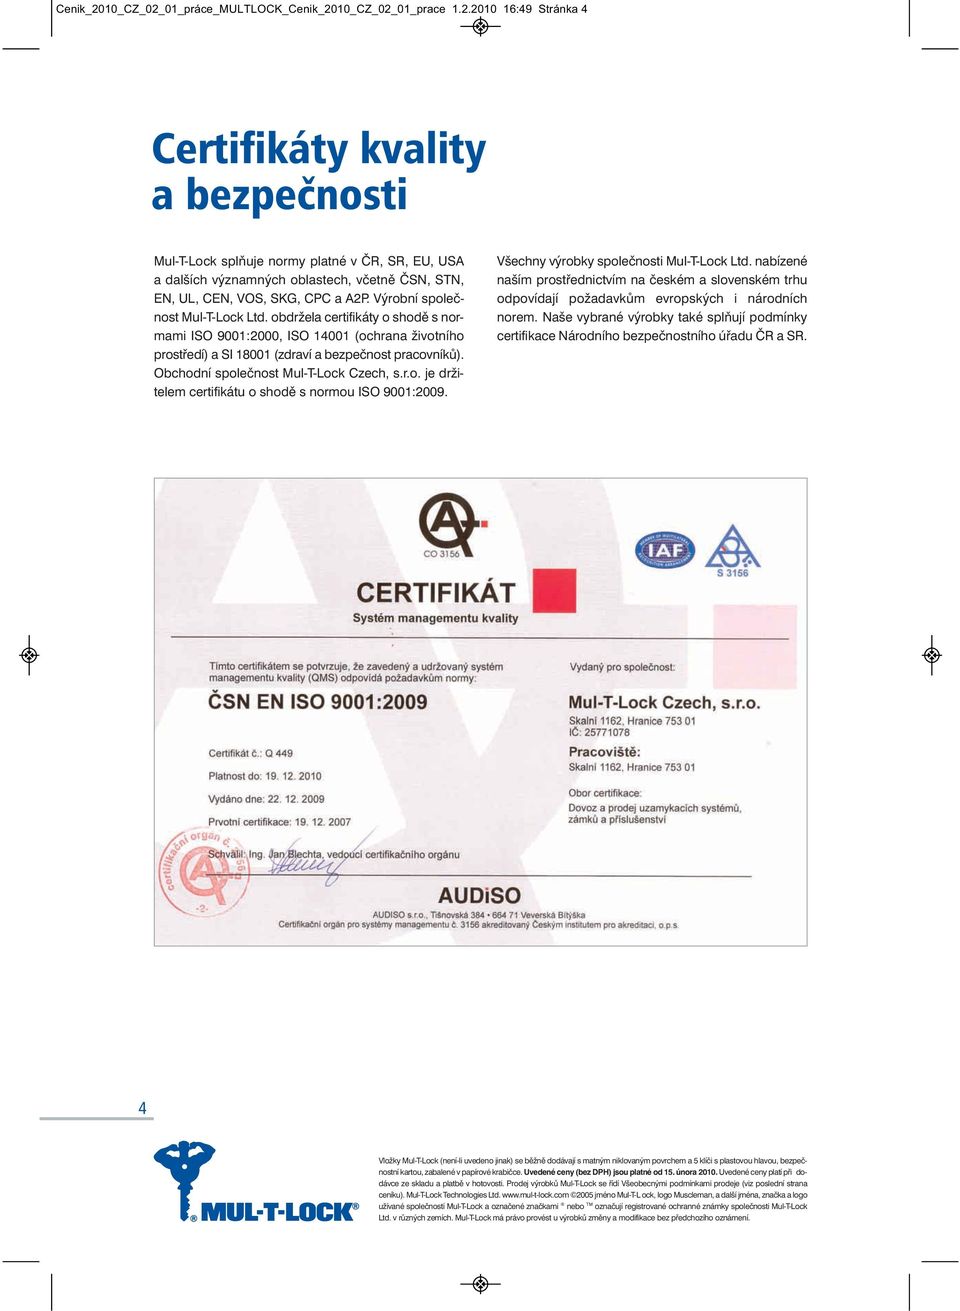 Obchodní společnost Mul-T-Lock Czech, s.r.o. je držitelem certifikátu o shodě s normou ISO 9001:2009. Všechny výrobky společnosti Mul-T-Lock Ltd.